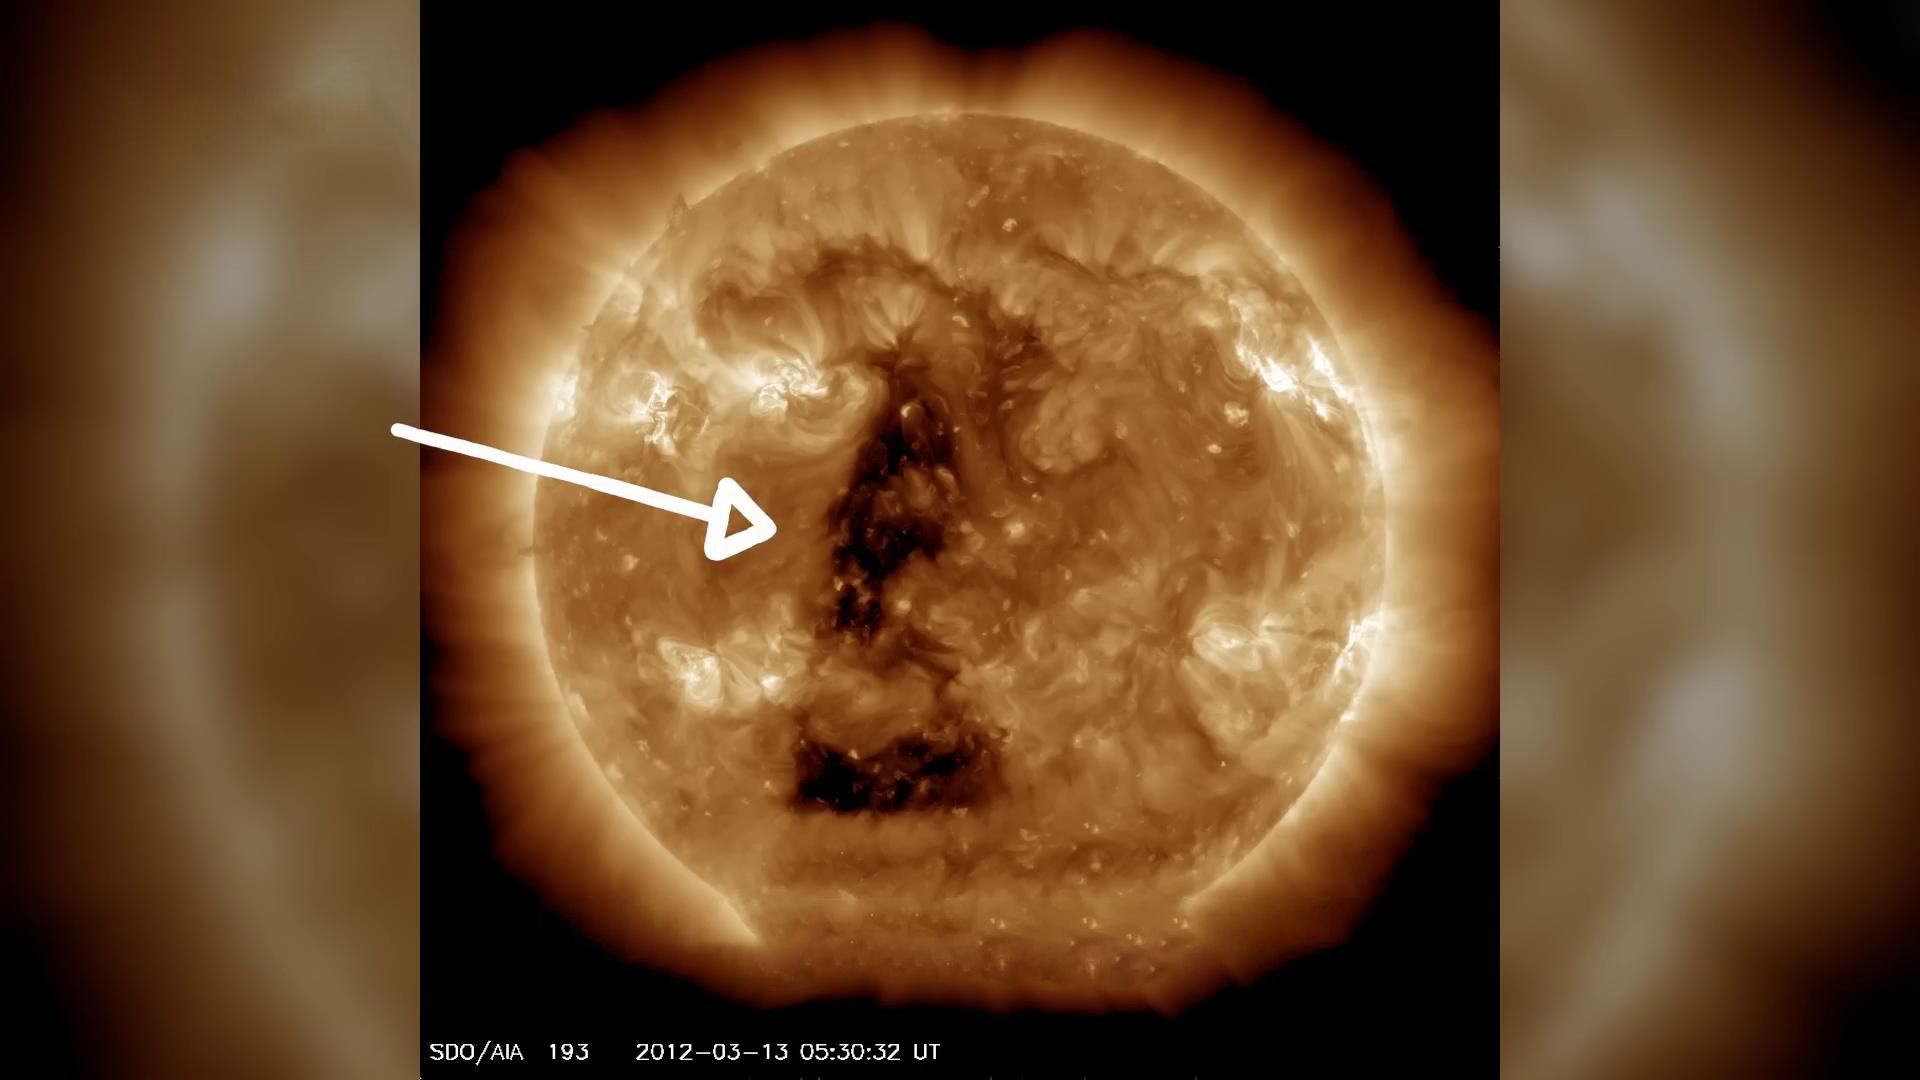 太阳表面巨型三角阴影，采集太阳物质的技术来源第三宇宙？